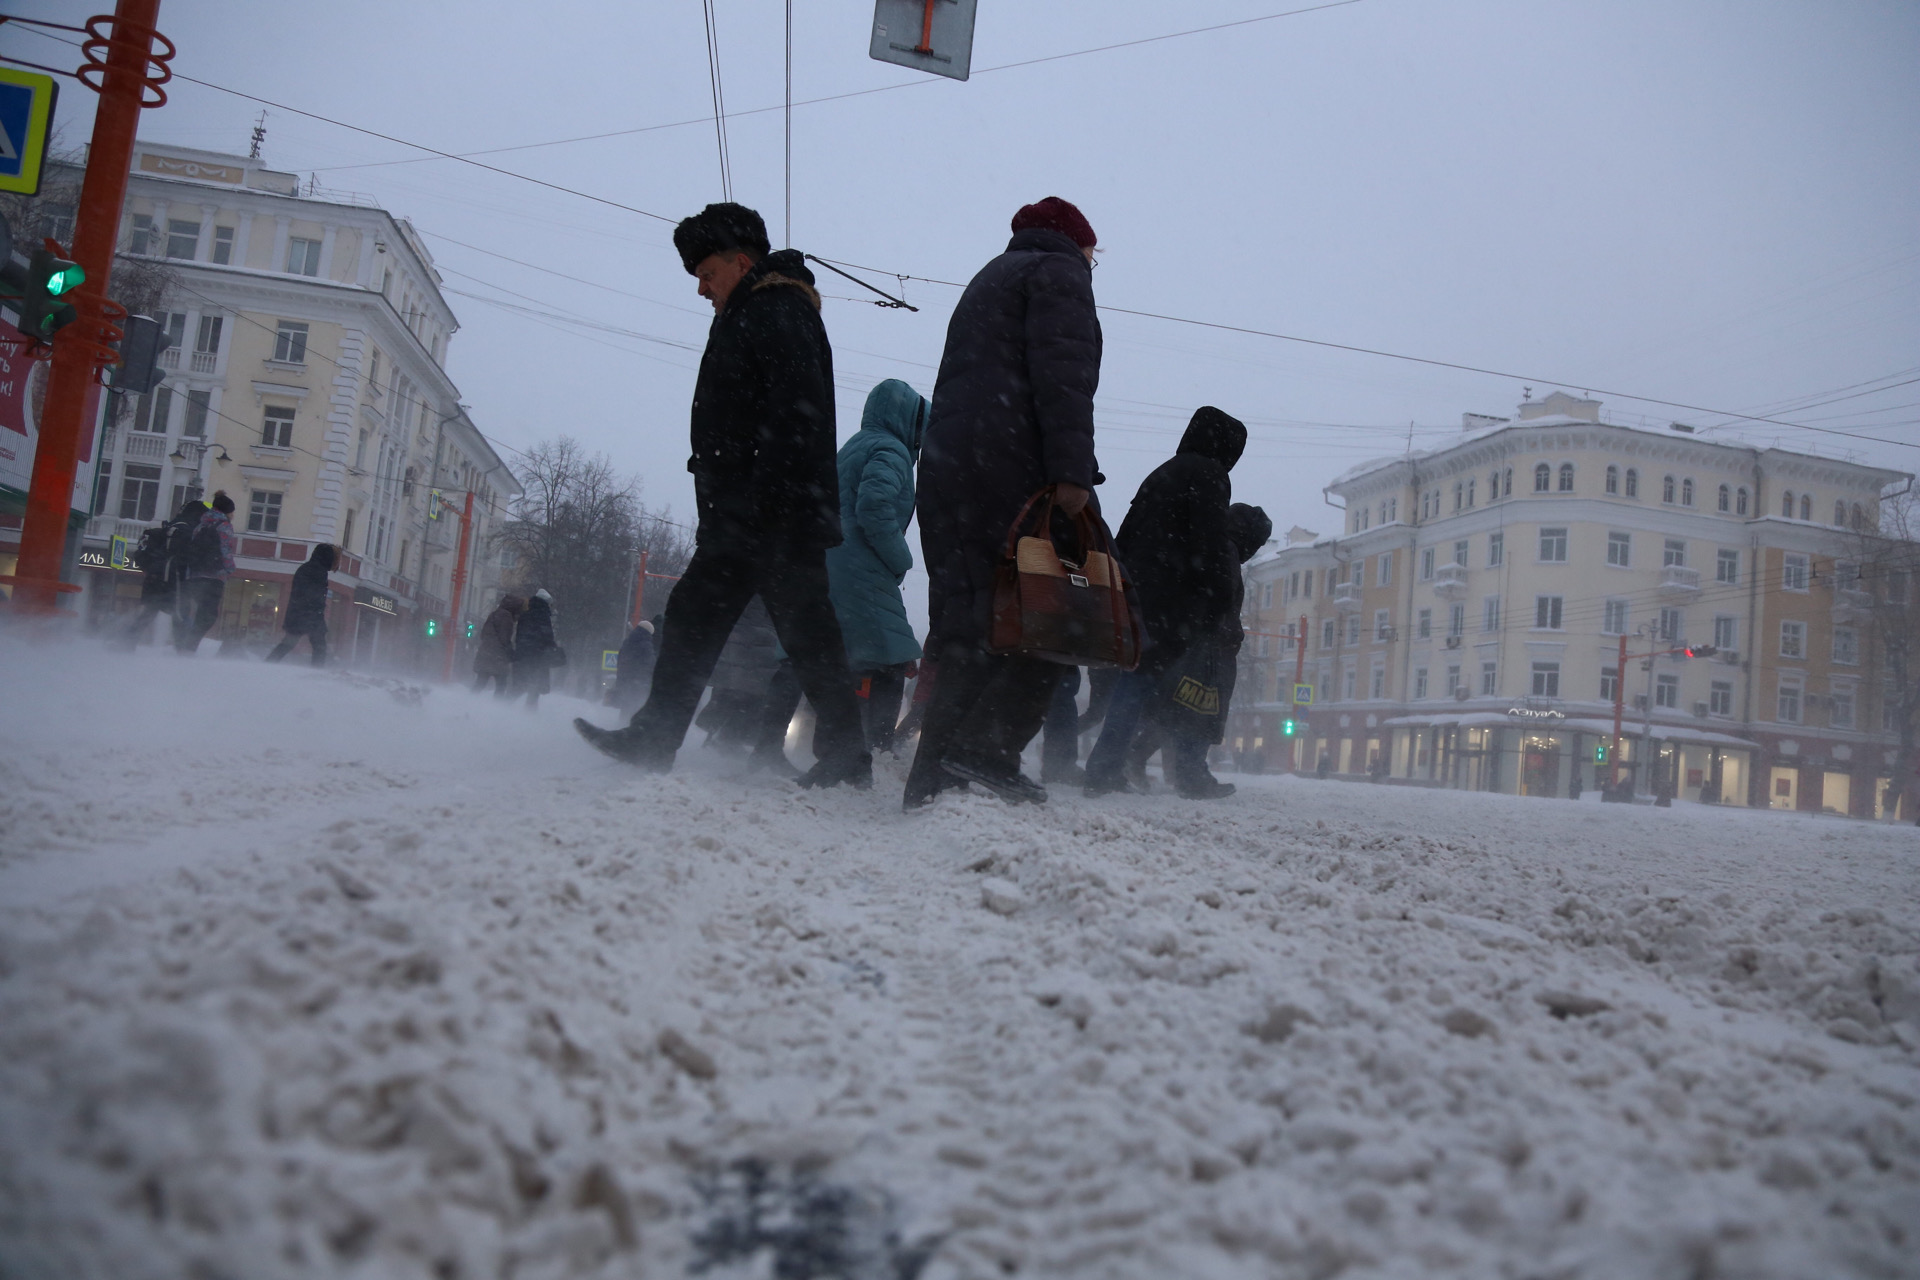 Мороз до -20 и дикий ветер: погода в Кузбассе превращается в адскую